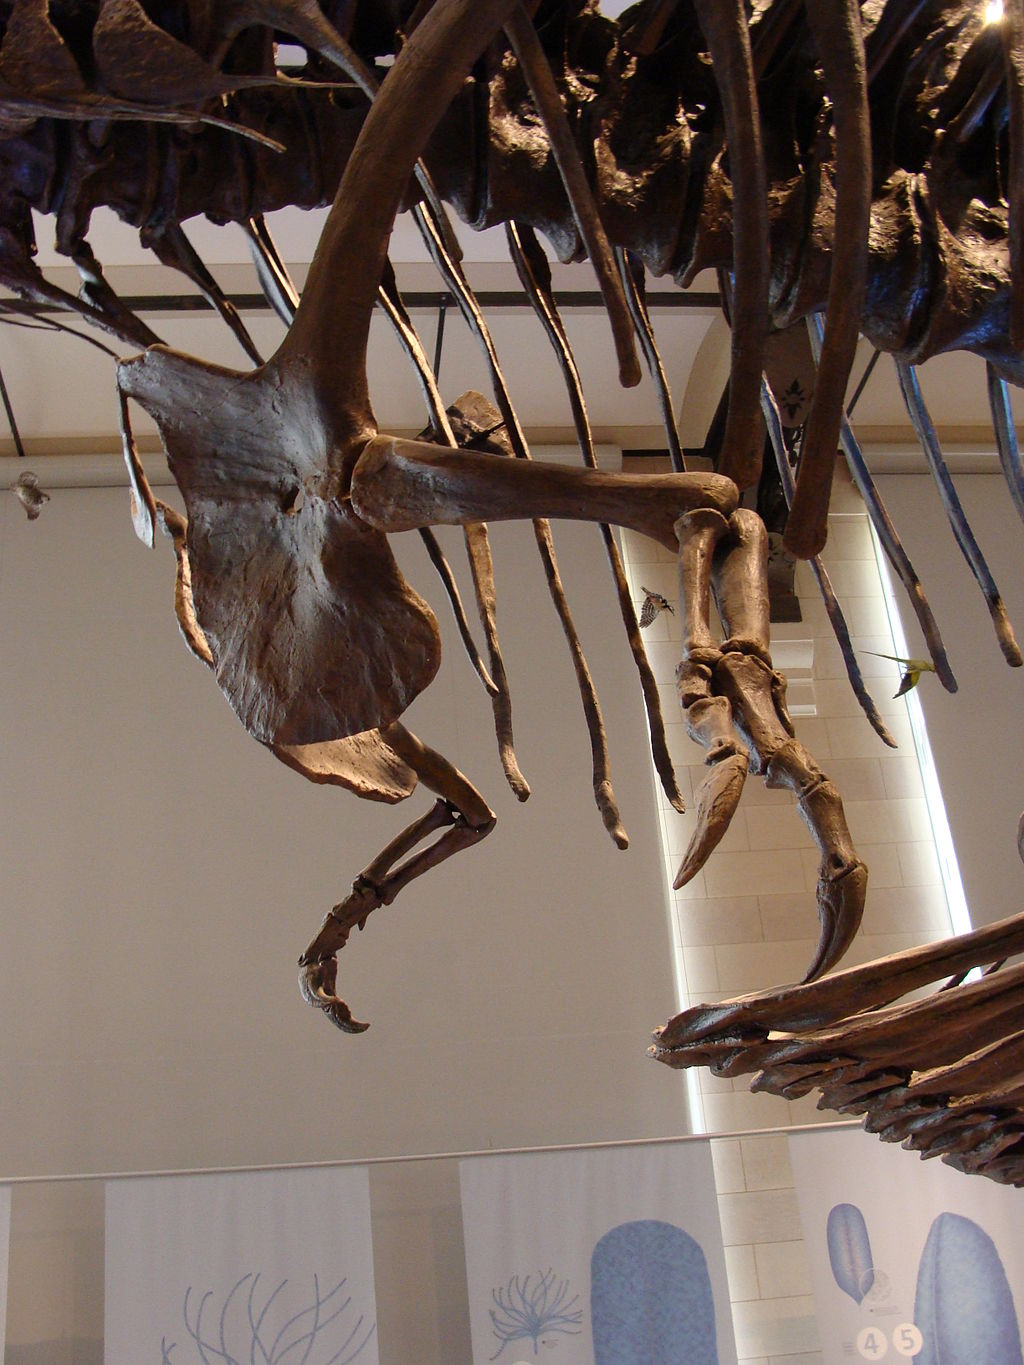 Přední končetiny tyranosaura byly nepochybně malé a disproporční. Přesto své občasné využití mít mohly, i když spíše náhodné a nepravidelné. Bohužel však není pravděpodobné, že se někdy s jistotou dozvíme, k jakému účelu byly tyranosaurem přednostně 